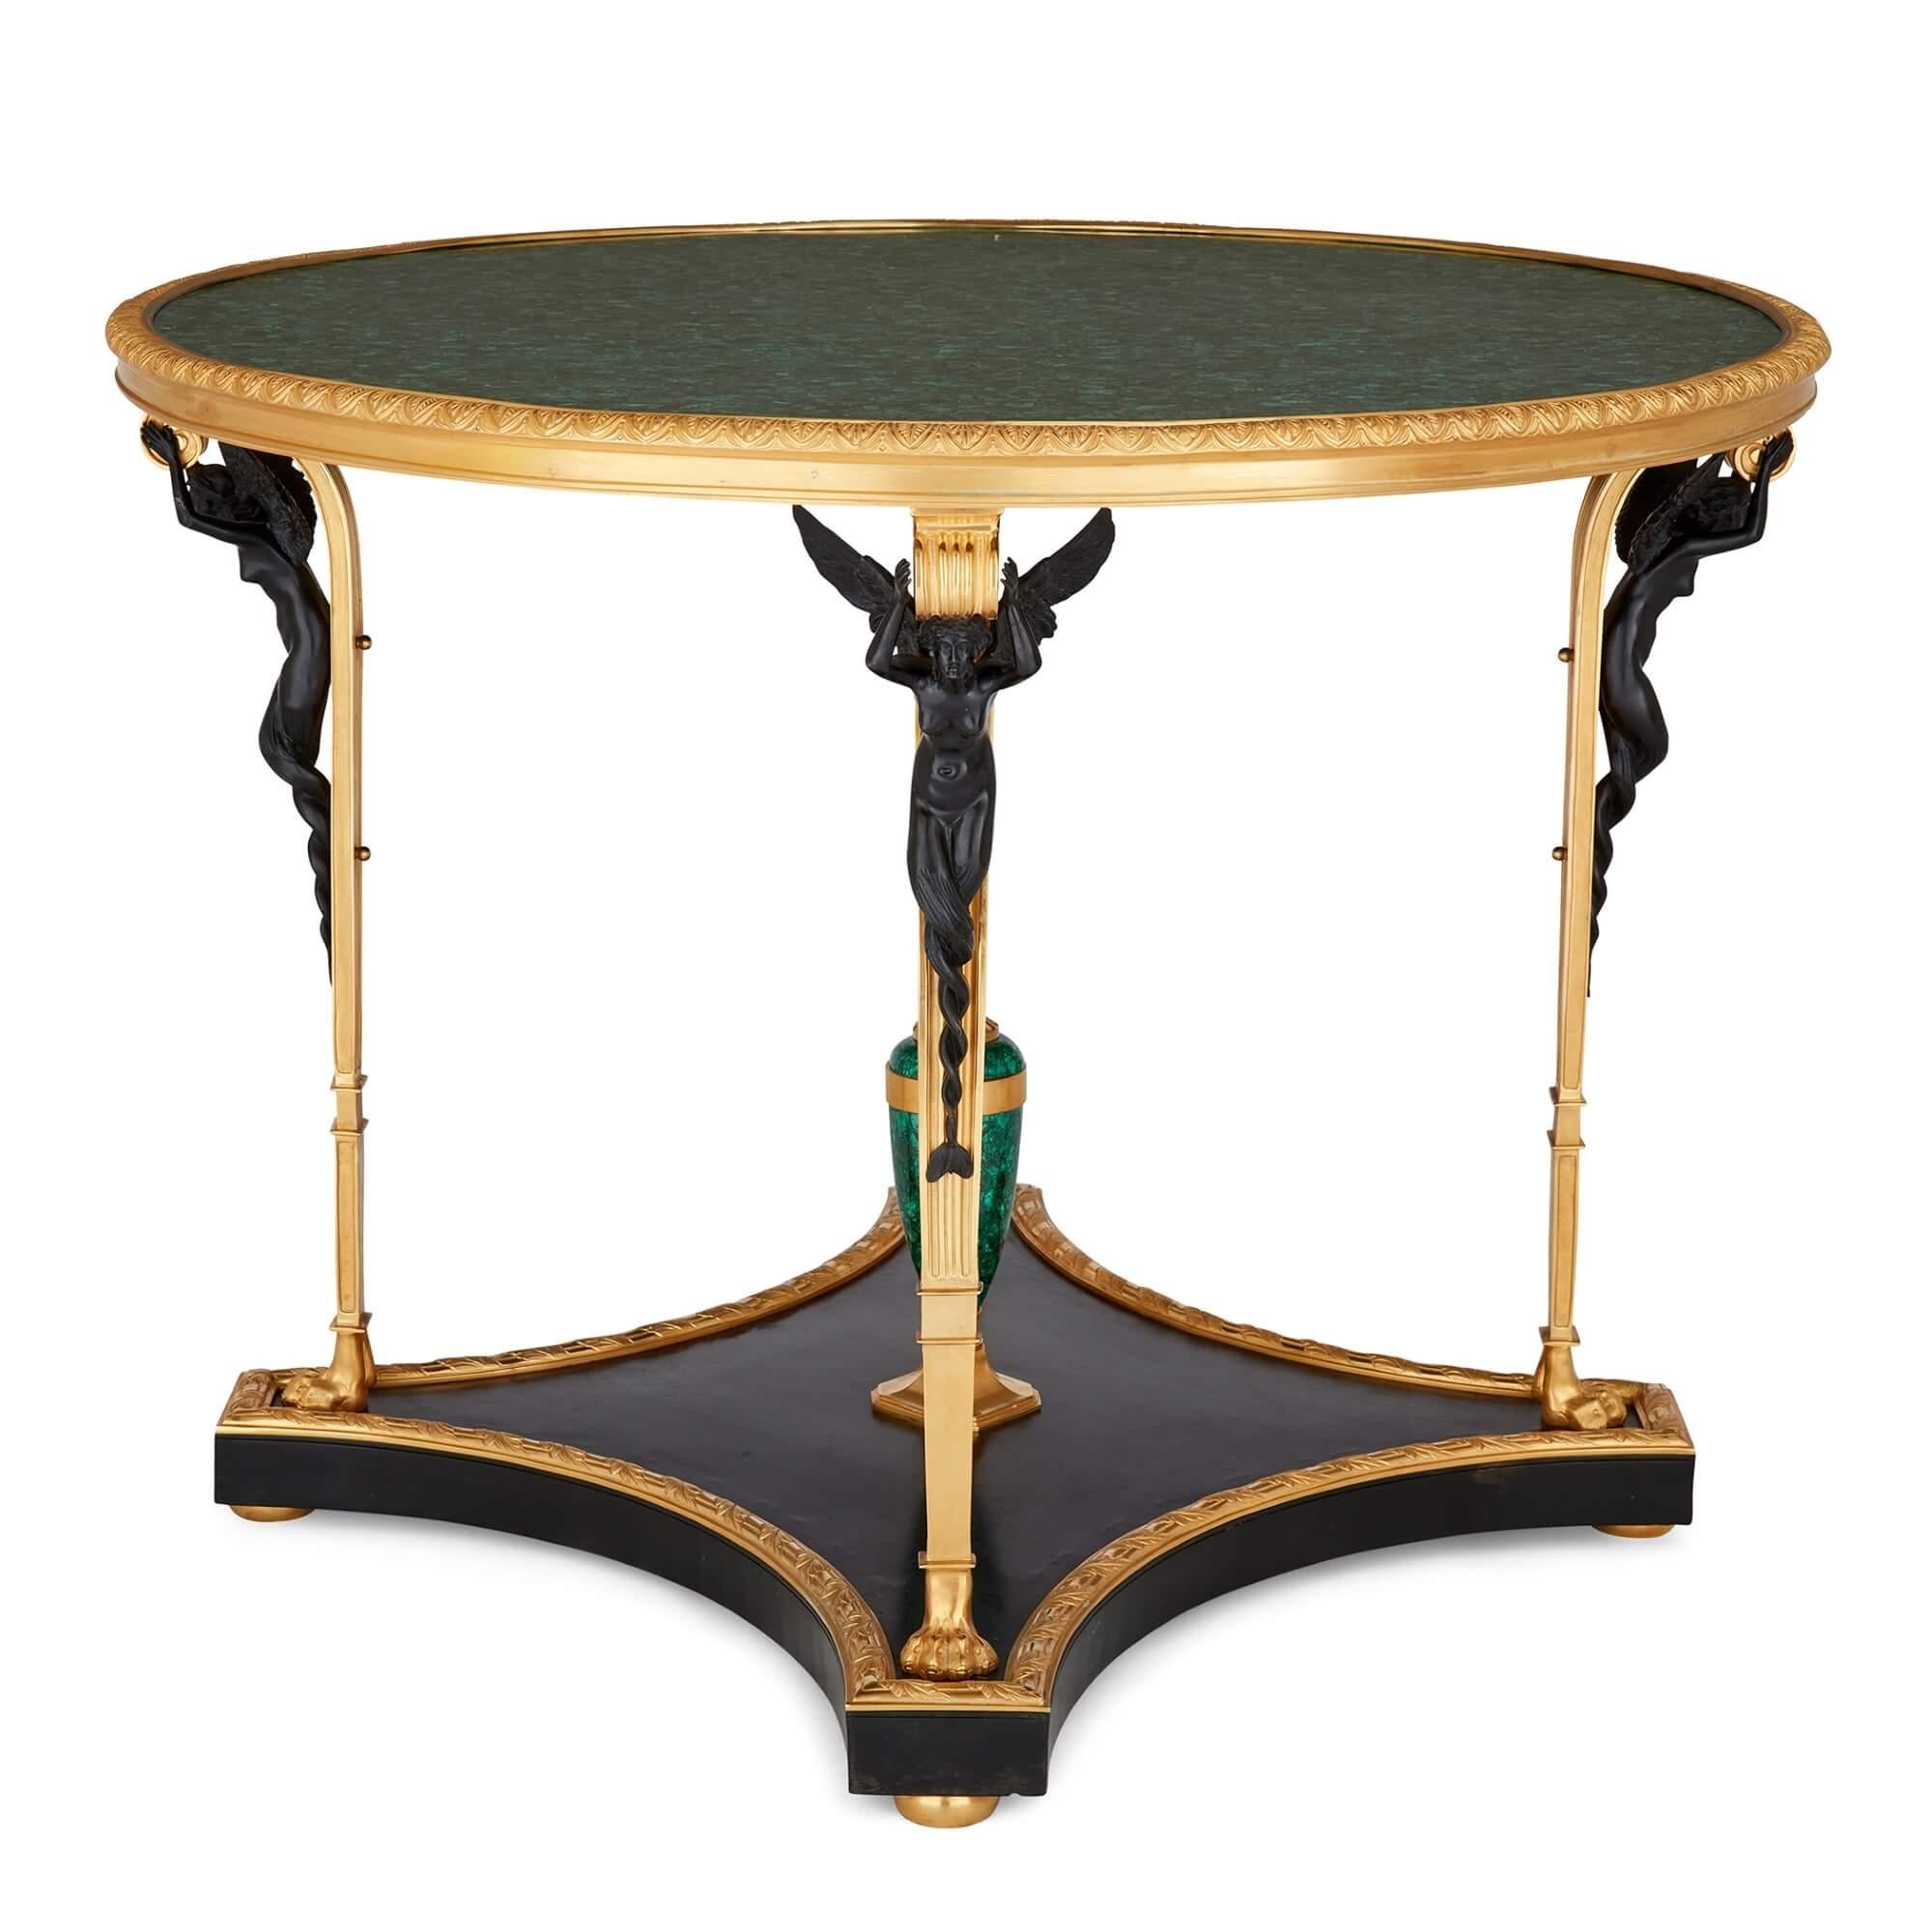 Table centrale en malachite de style Empire français montée en bronze doré 
Français, 20ème siècle
Hauteur 77 cm, diamètre 100 cm

Merveilleusement fabriquée à partir d'une sélection de matériaux de haute qualité, cette table centrale de style